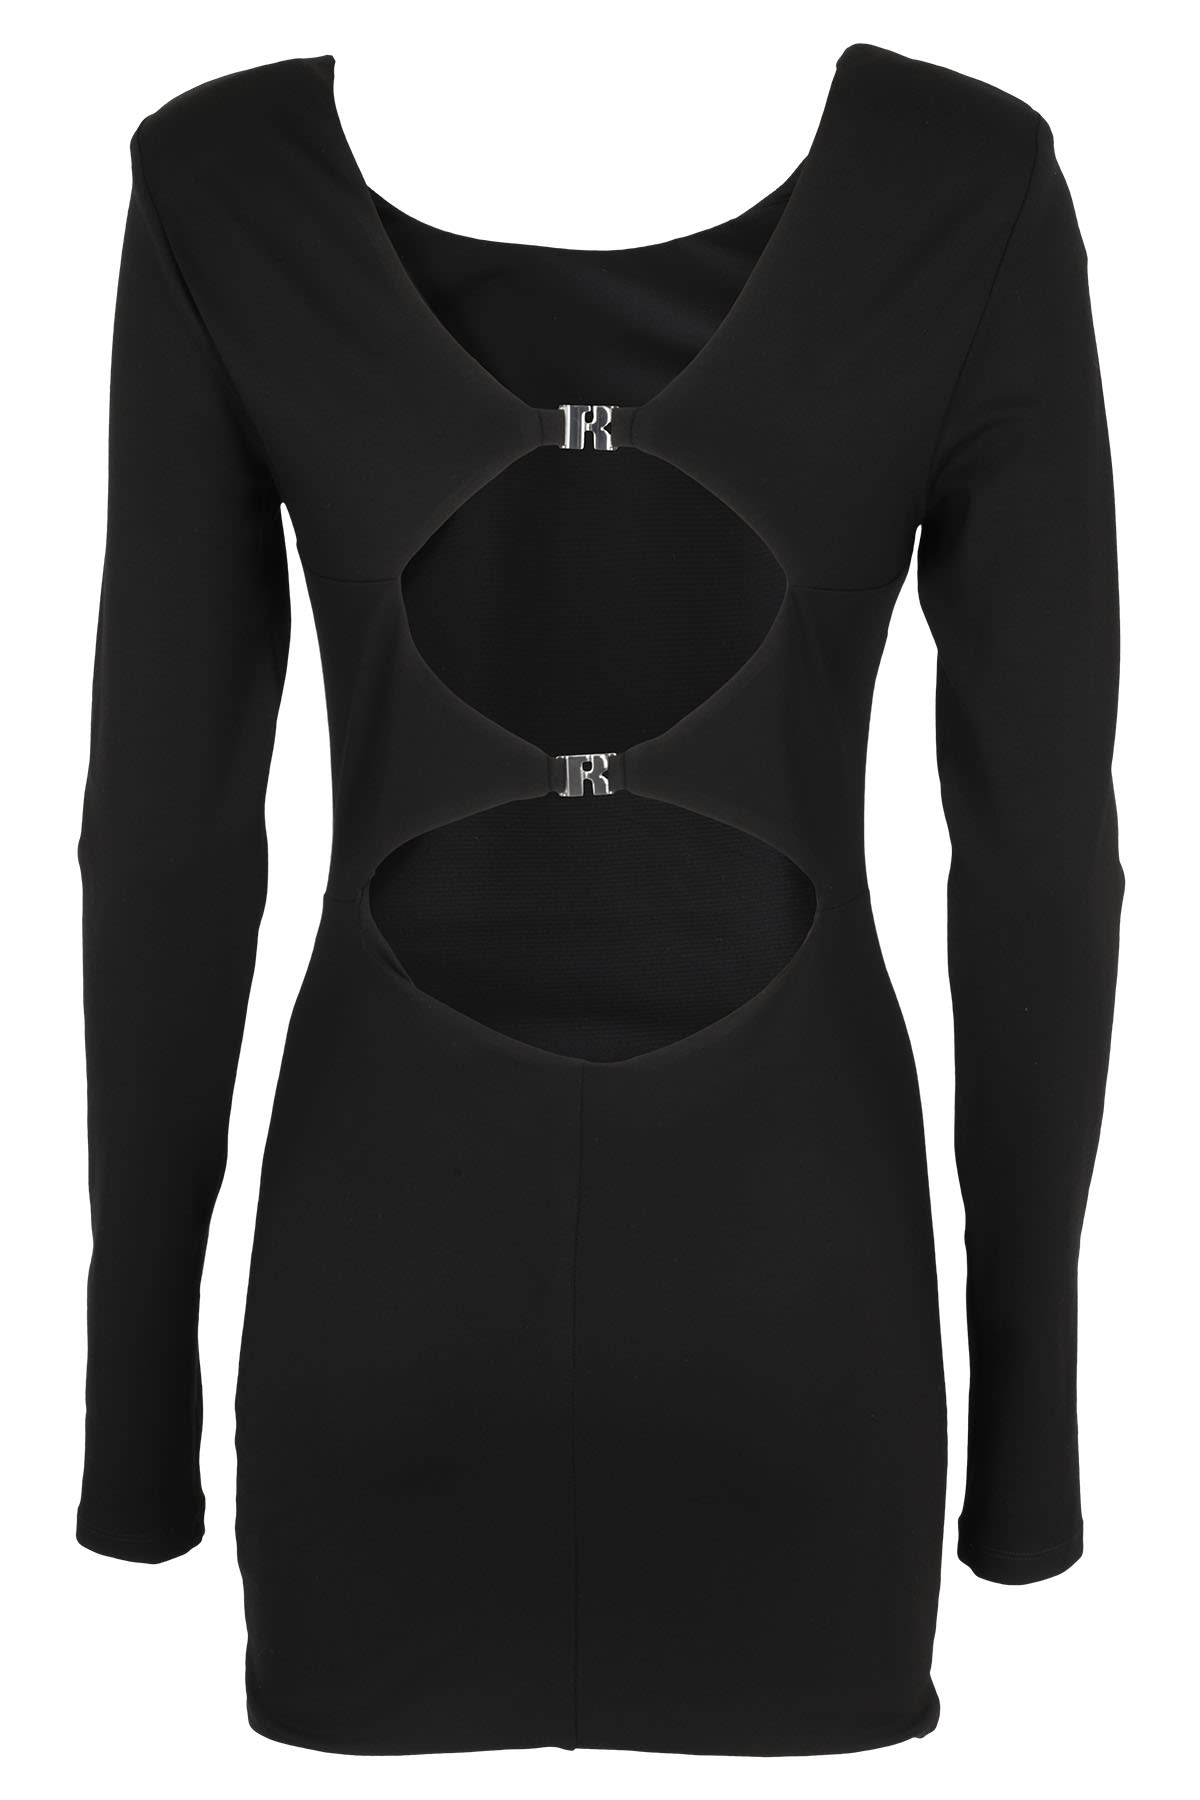 Shop Rotate Birger Christensen Jersey In Black